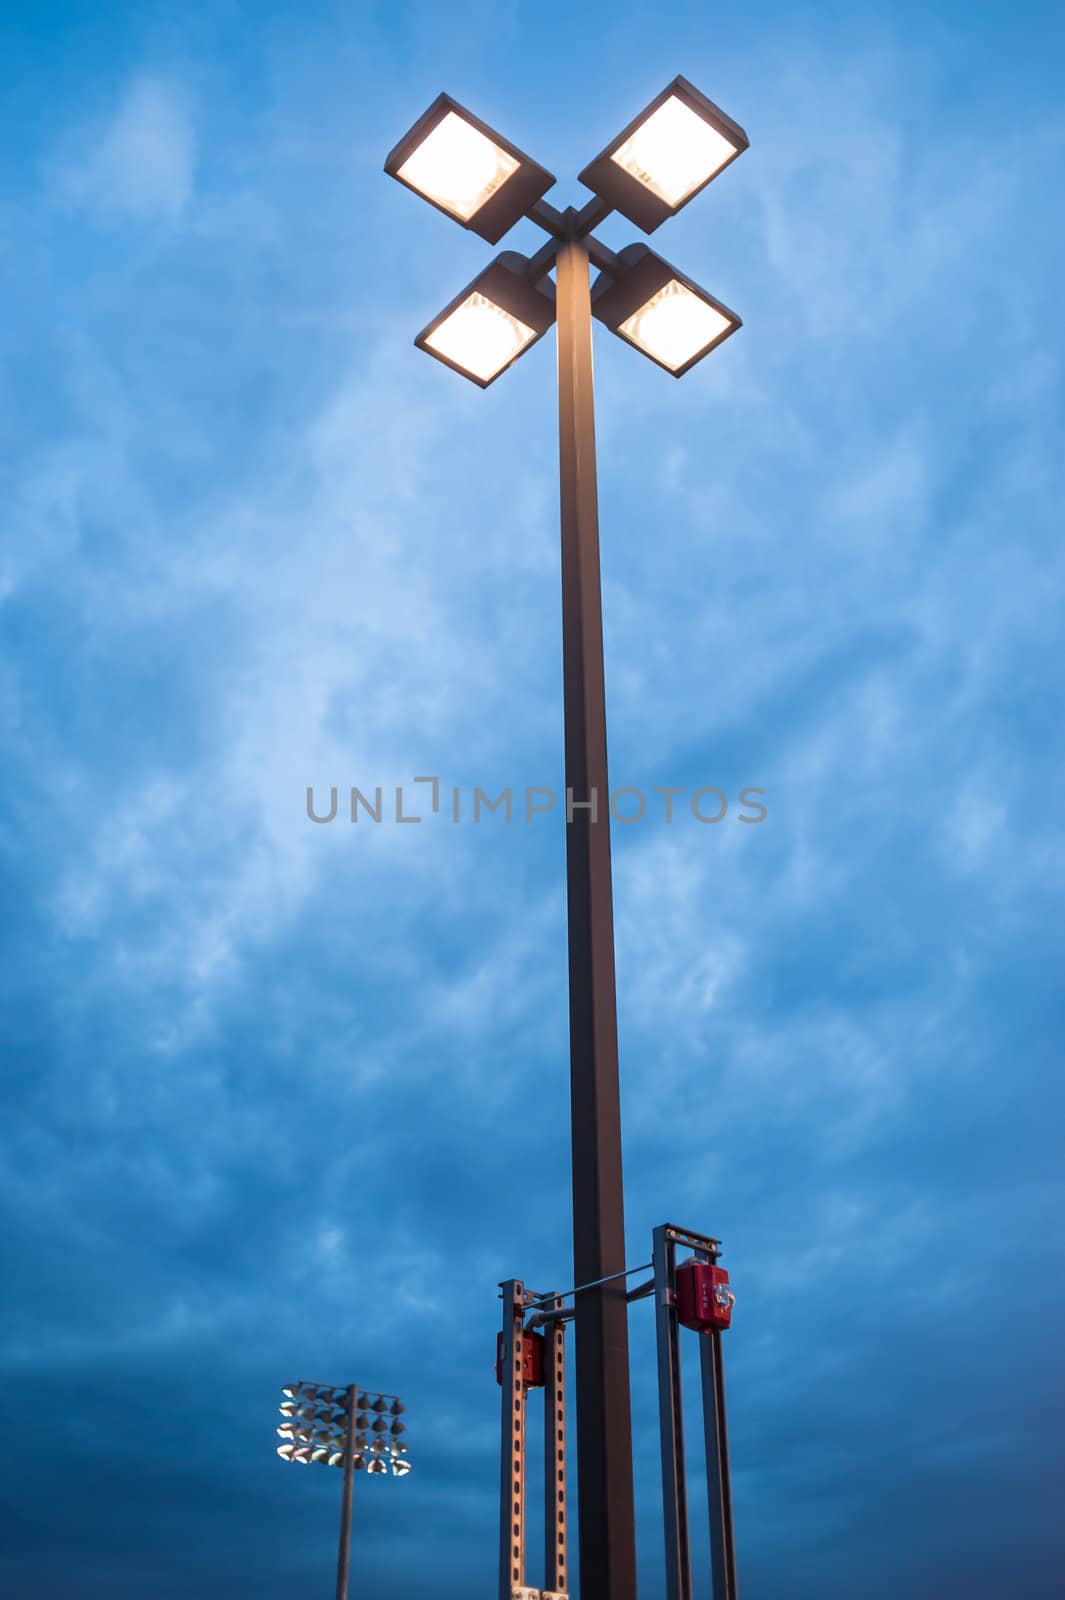 Street light at dusk against blue cloudy sky